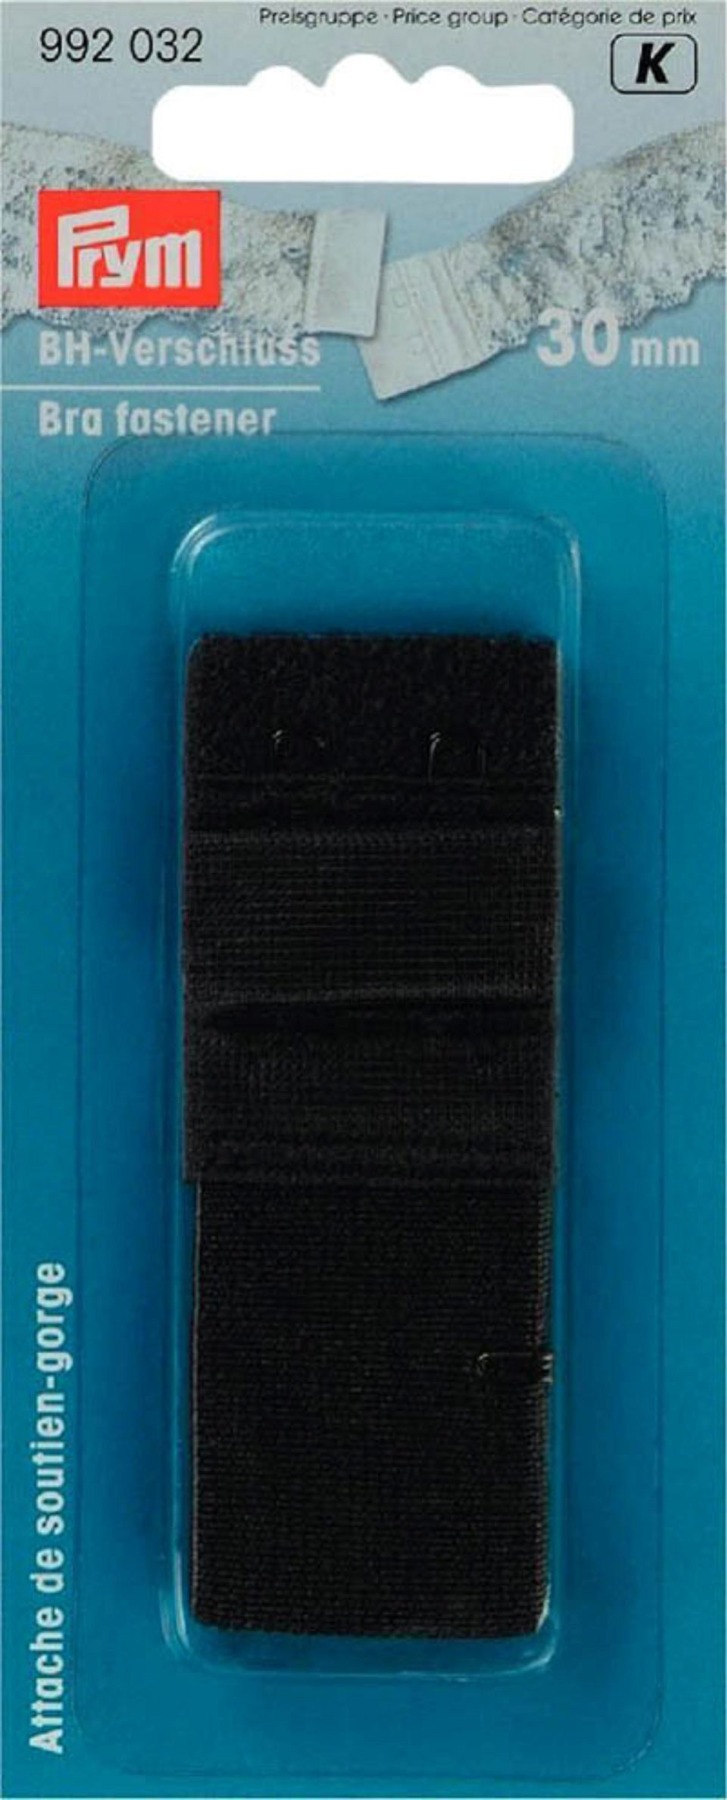 BH-Verschluß, 30 mm, schwarz | Prym 992032